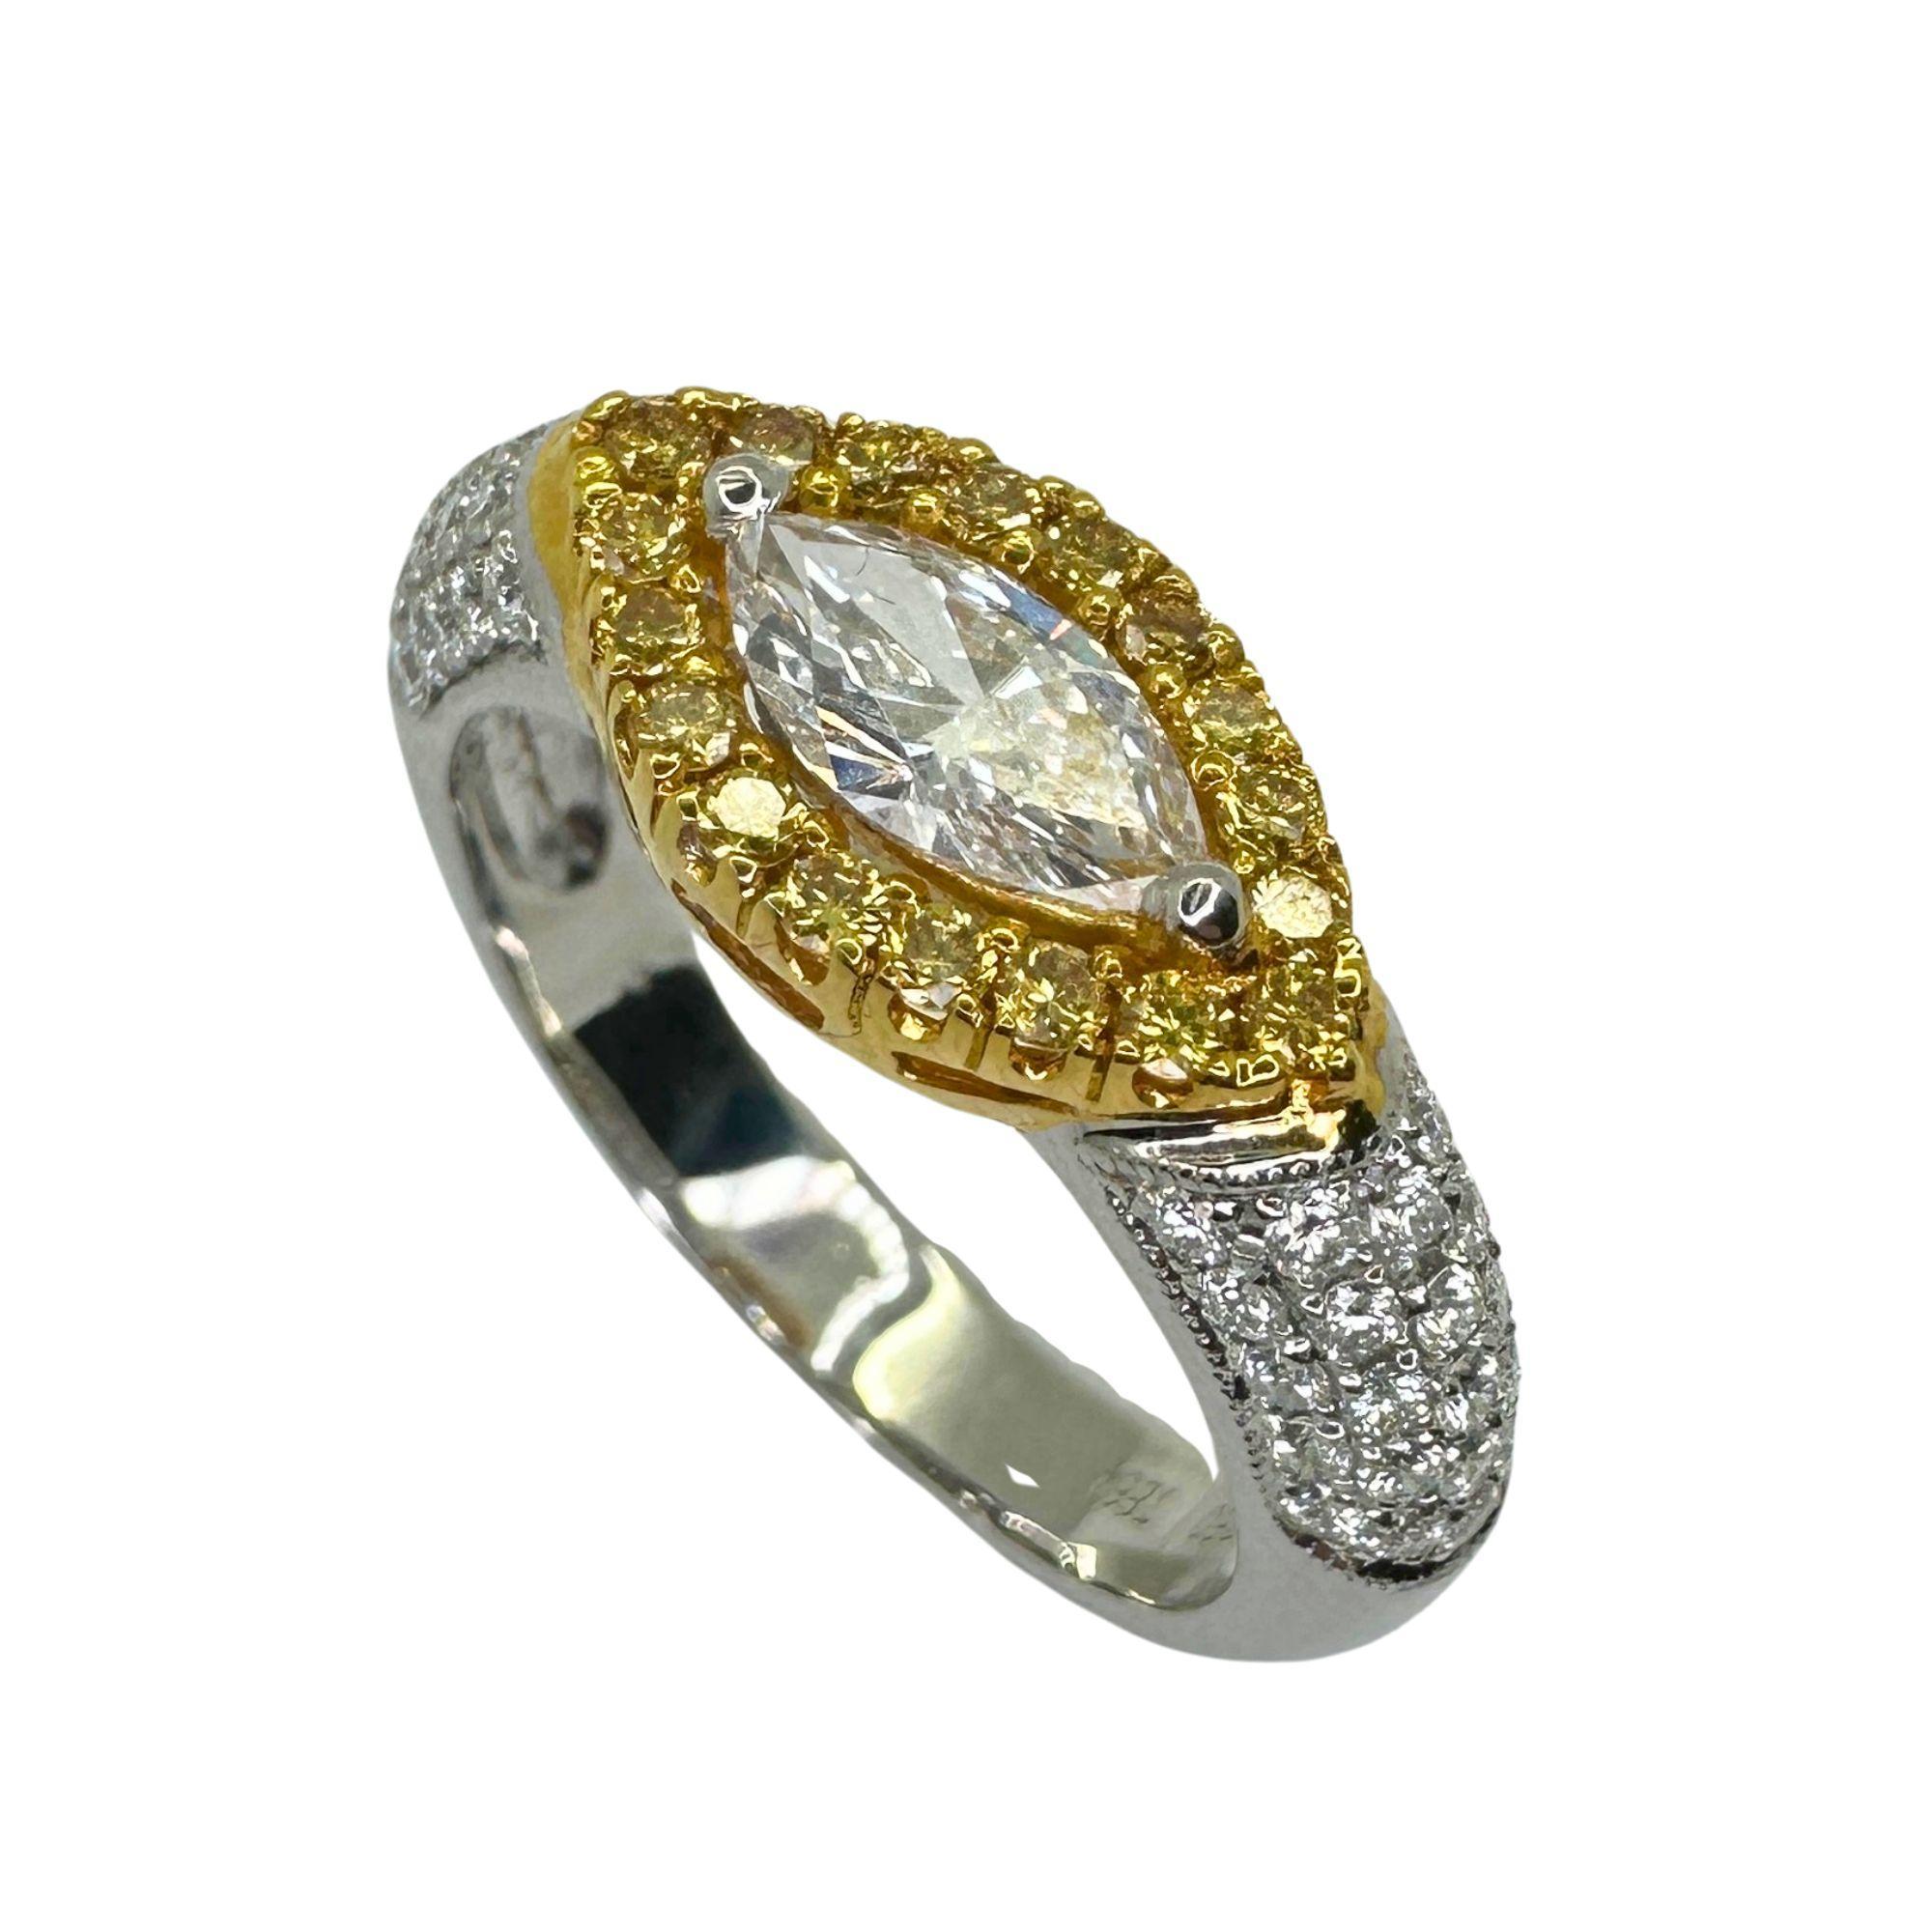 Dieser exquisite Ring besteht aus einem marquiseförmigen Ost-West-Diamanten in der Mitte, der durch einen atemberaubenden gelben Diamantenhalo ergänzt wird. Dieser 5,2 Gramm schwere Ring aus 18 Karat Weißgold mit einem Gesamtgewicht von 1,05 Karat